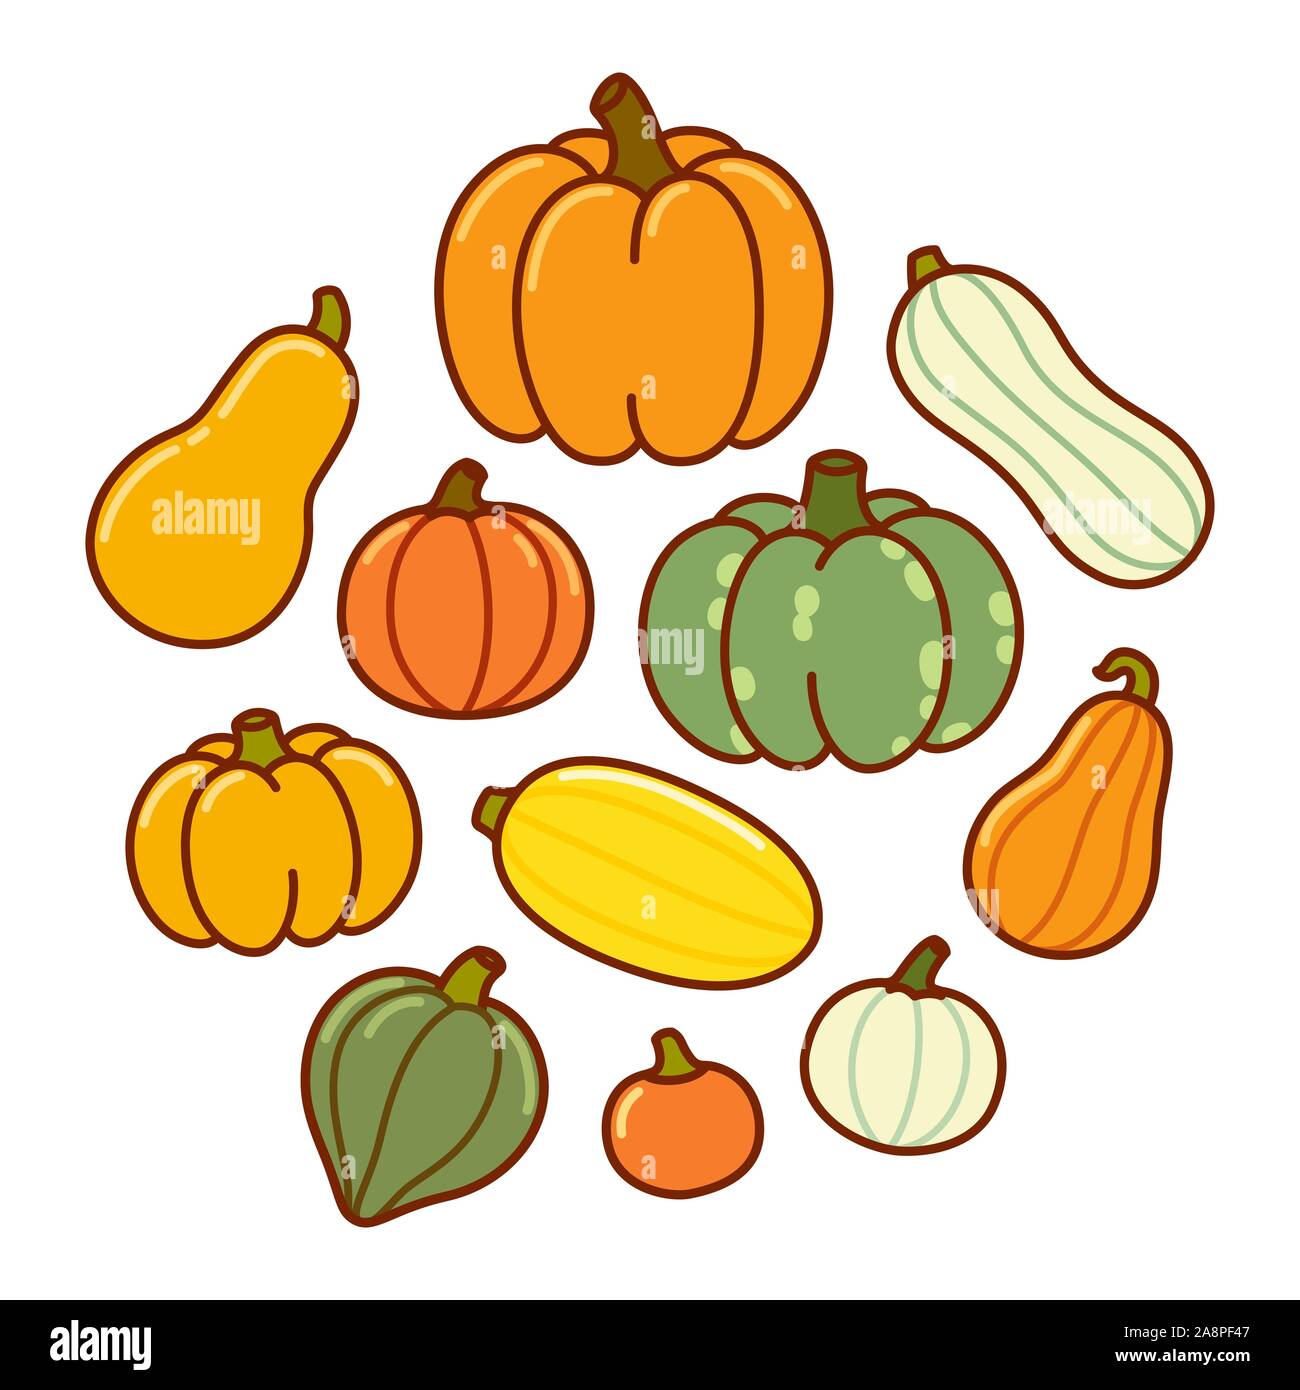 Disegno animato di diversi tipi di zucca e squash. Autumn harvest verdure, vettore disegnato a mano stile doodle illustrazione. Illustrazione Vettoriale